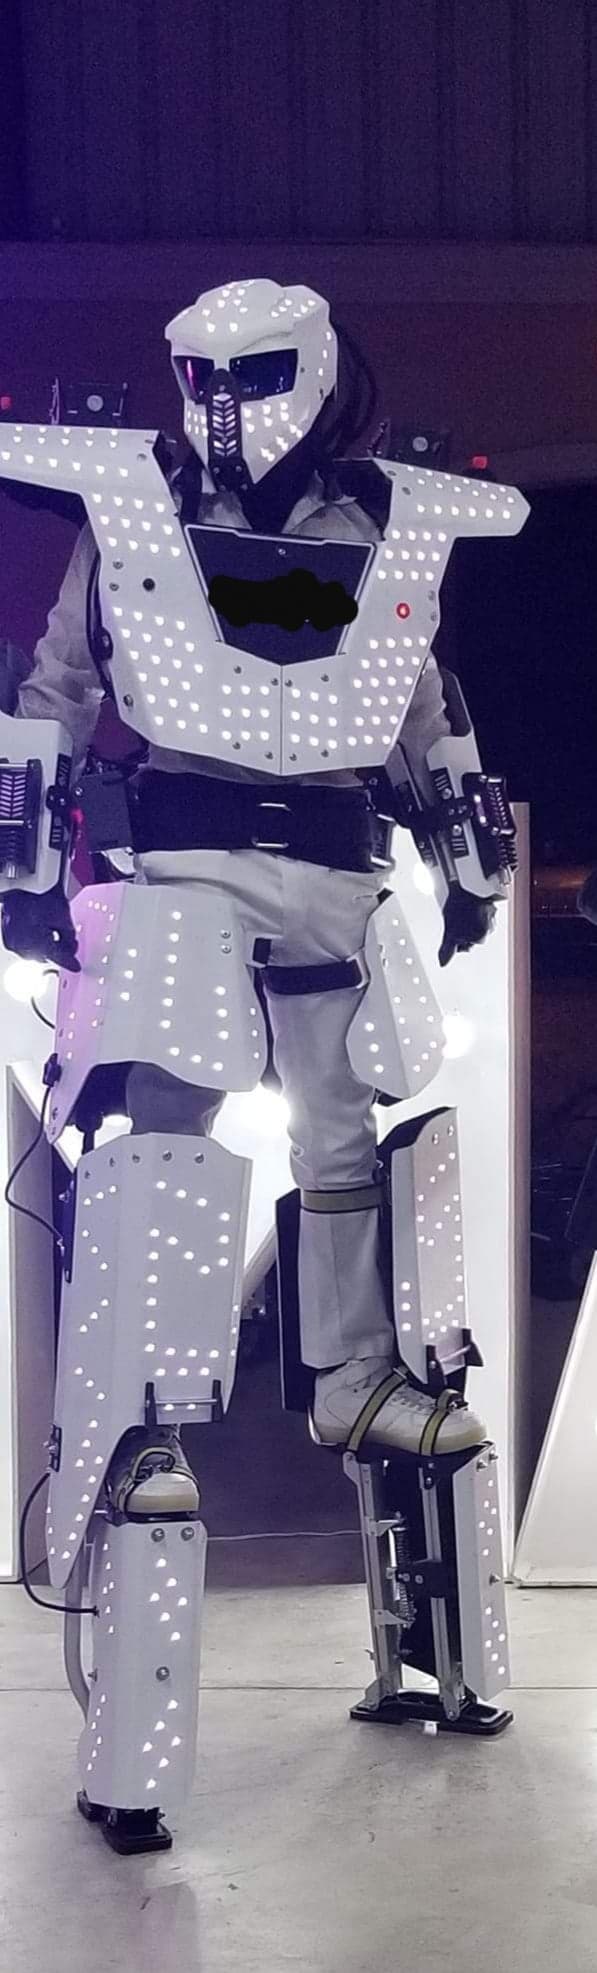 Amazing LED Robot Costume